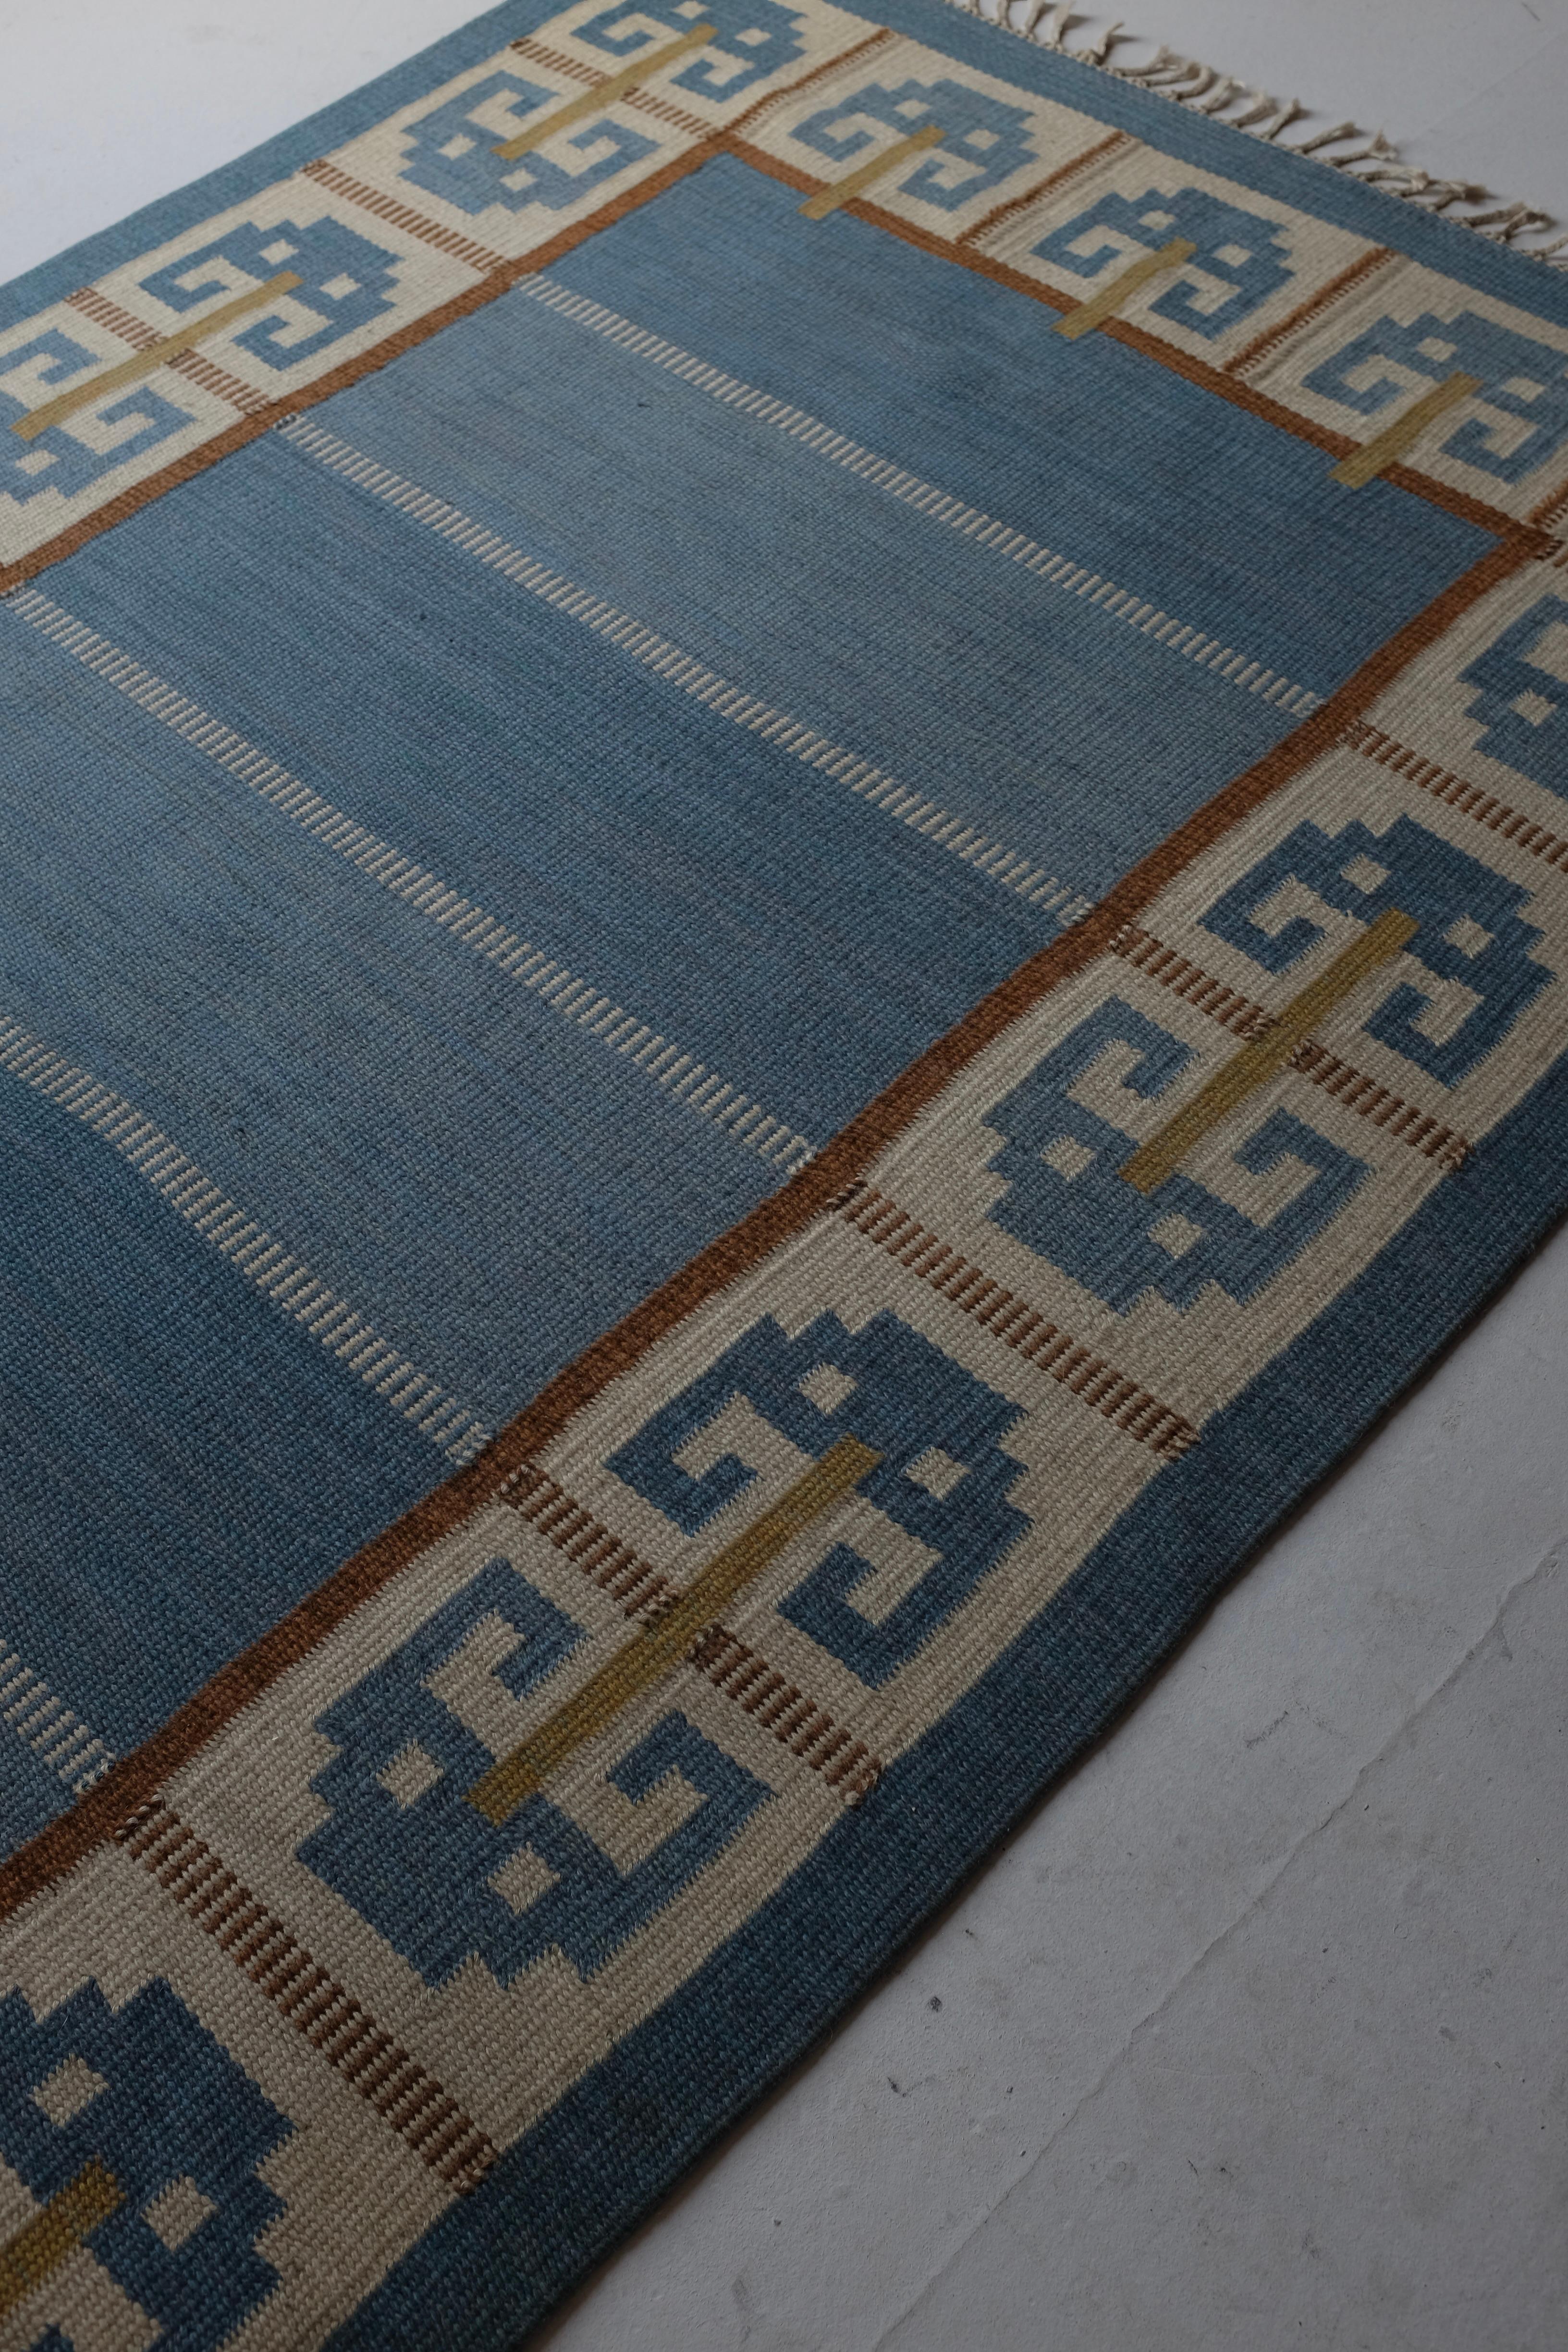 Mid-20th Century Vintage Swedish rug 